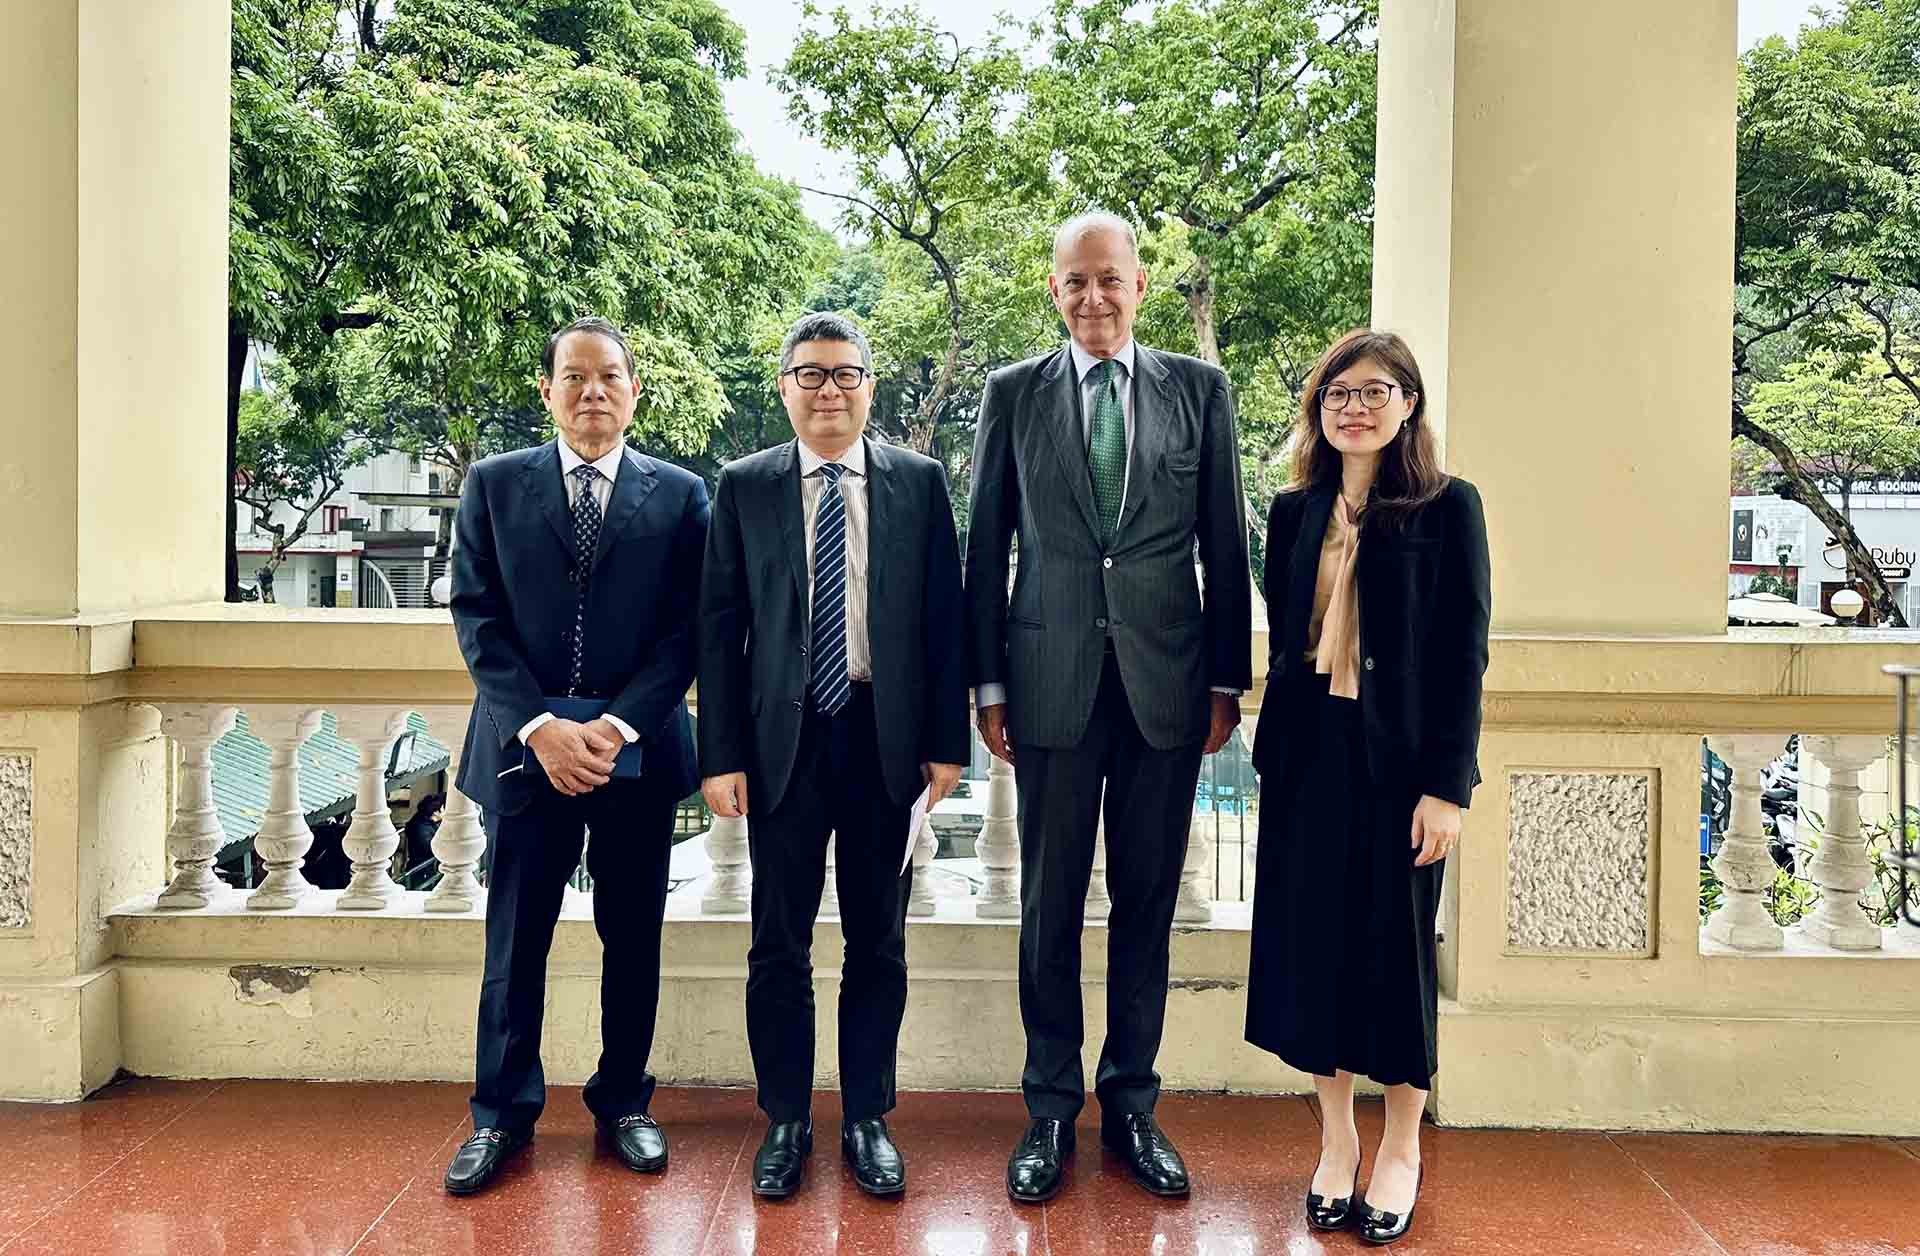 Cục trưởng Cục Lãnh sự Doãn Hoàng Minh và ông Giuseppe de Vincentiis, Đại diện UNHCR tại Thái Lan phụ trách Việt Nam cùng các đại biểu.